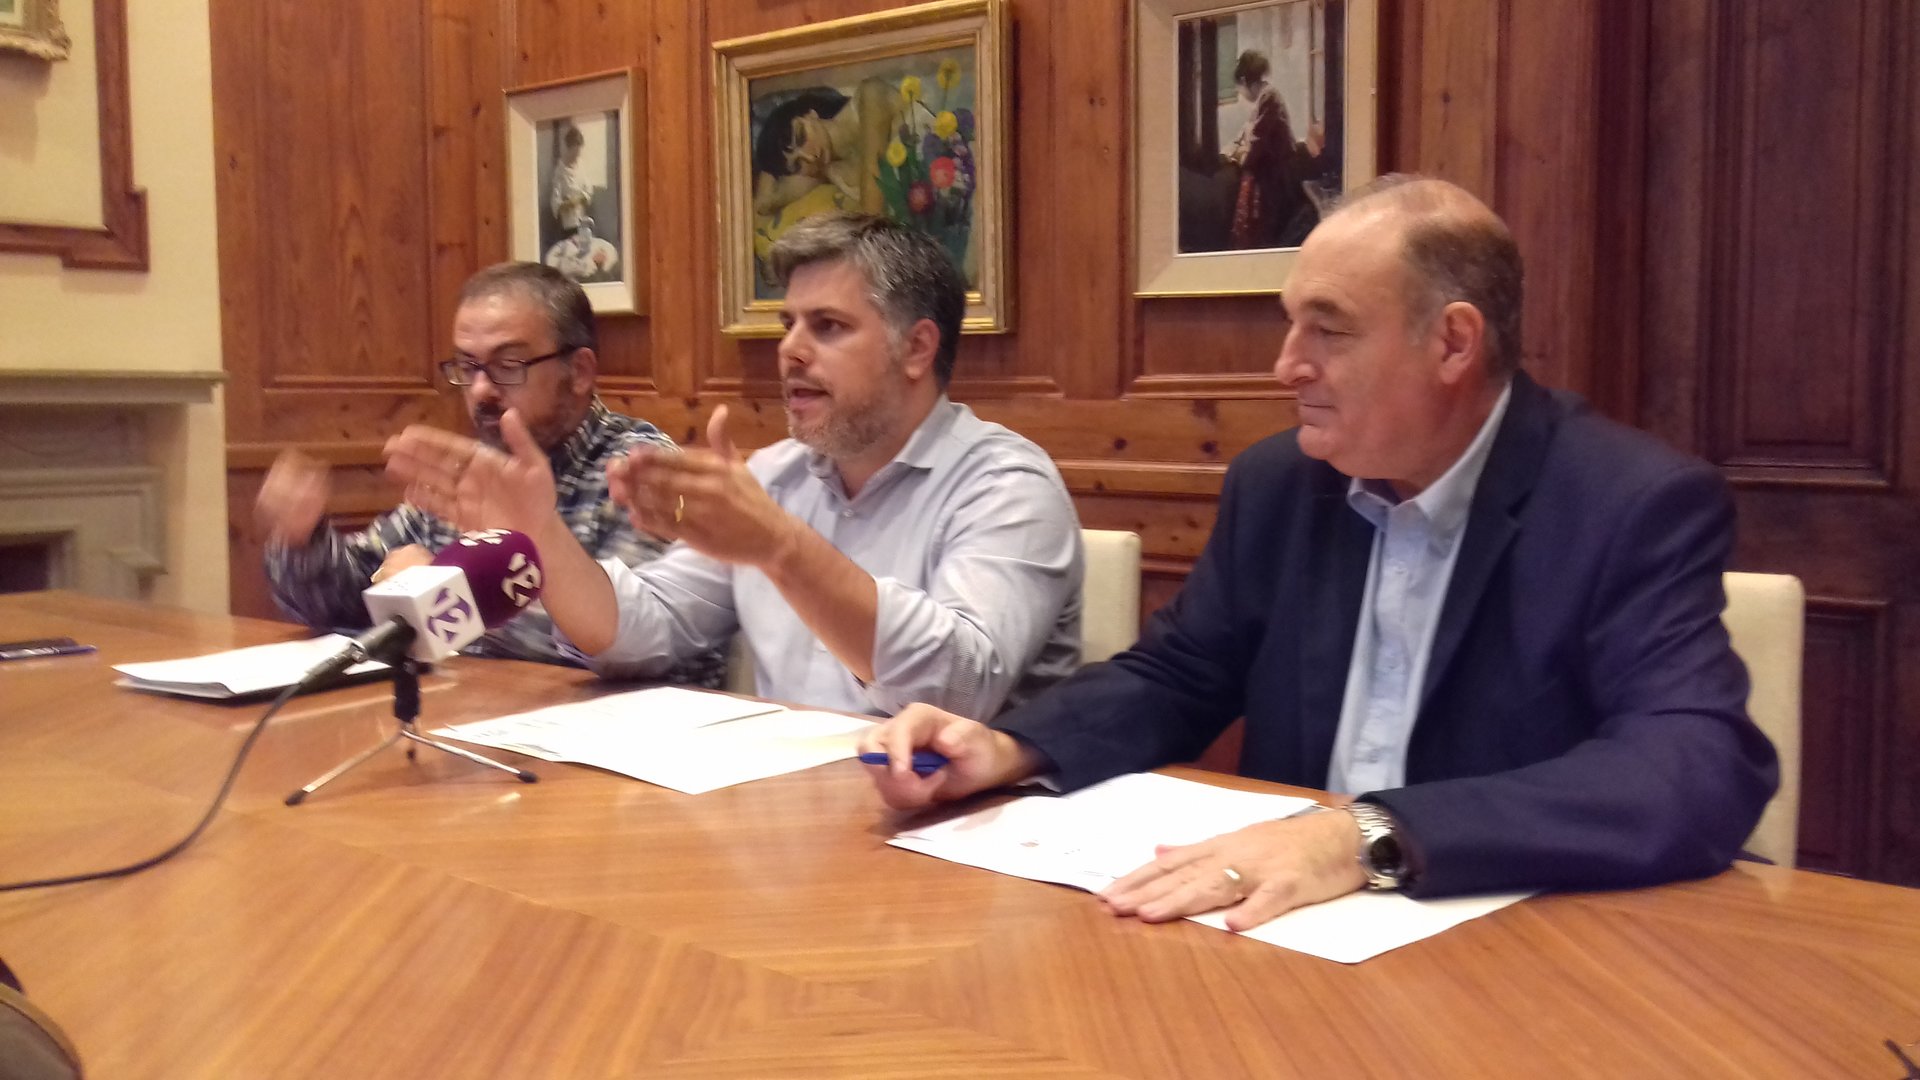 Al centre, l'alcalde de Valls, Albert Batet, durant la presentació en roda de premsa de la modificació de planejament, acompanyat pels regidors de Territori i d'Empresa, Martí Barberà i Joan Carles Solé